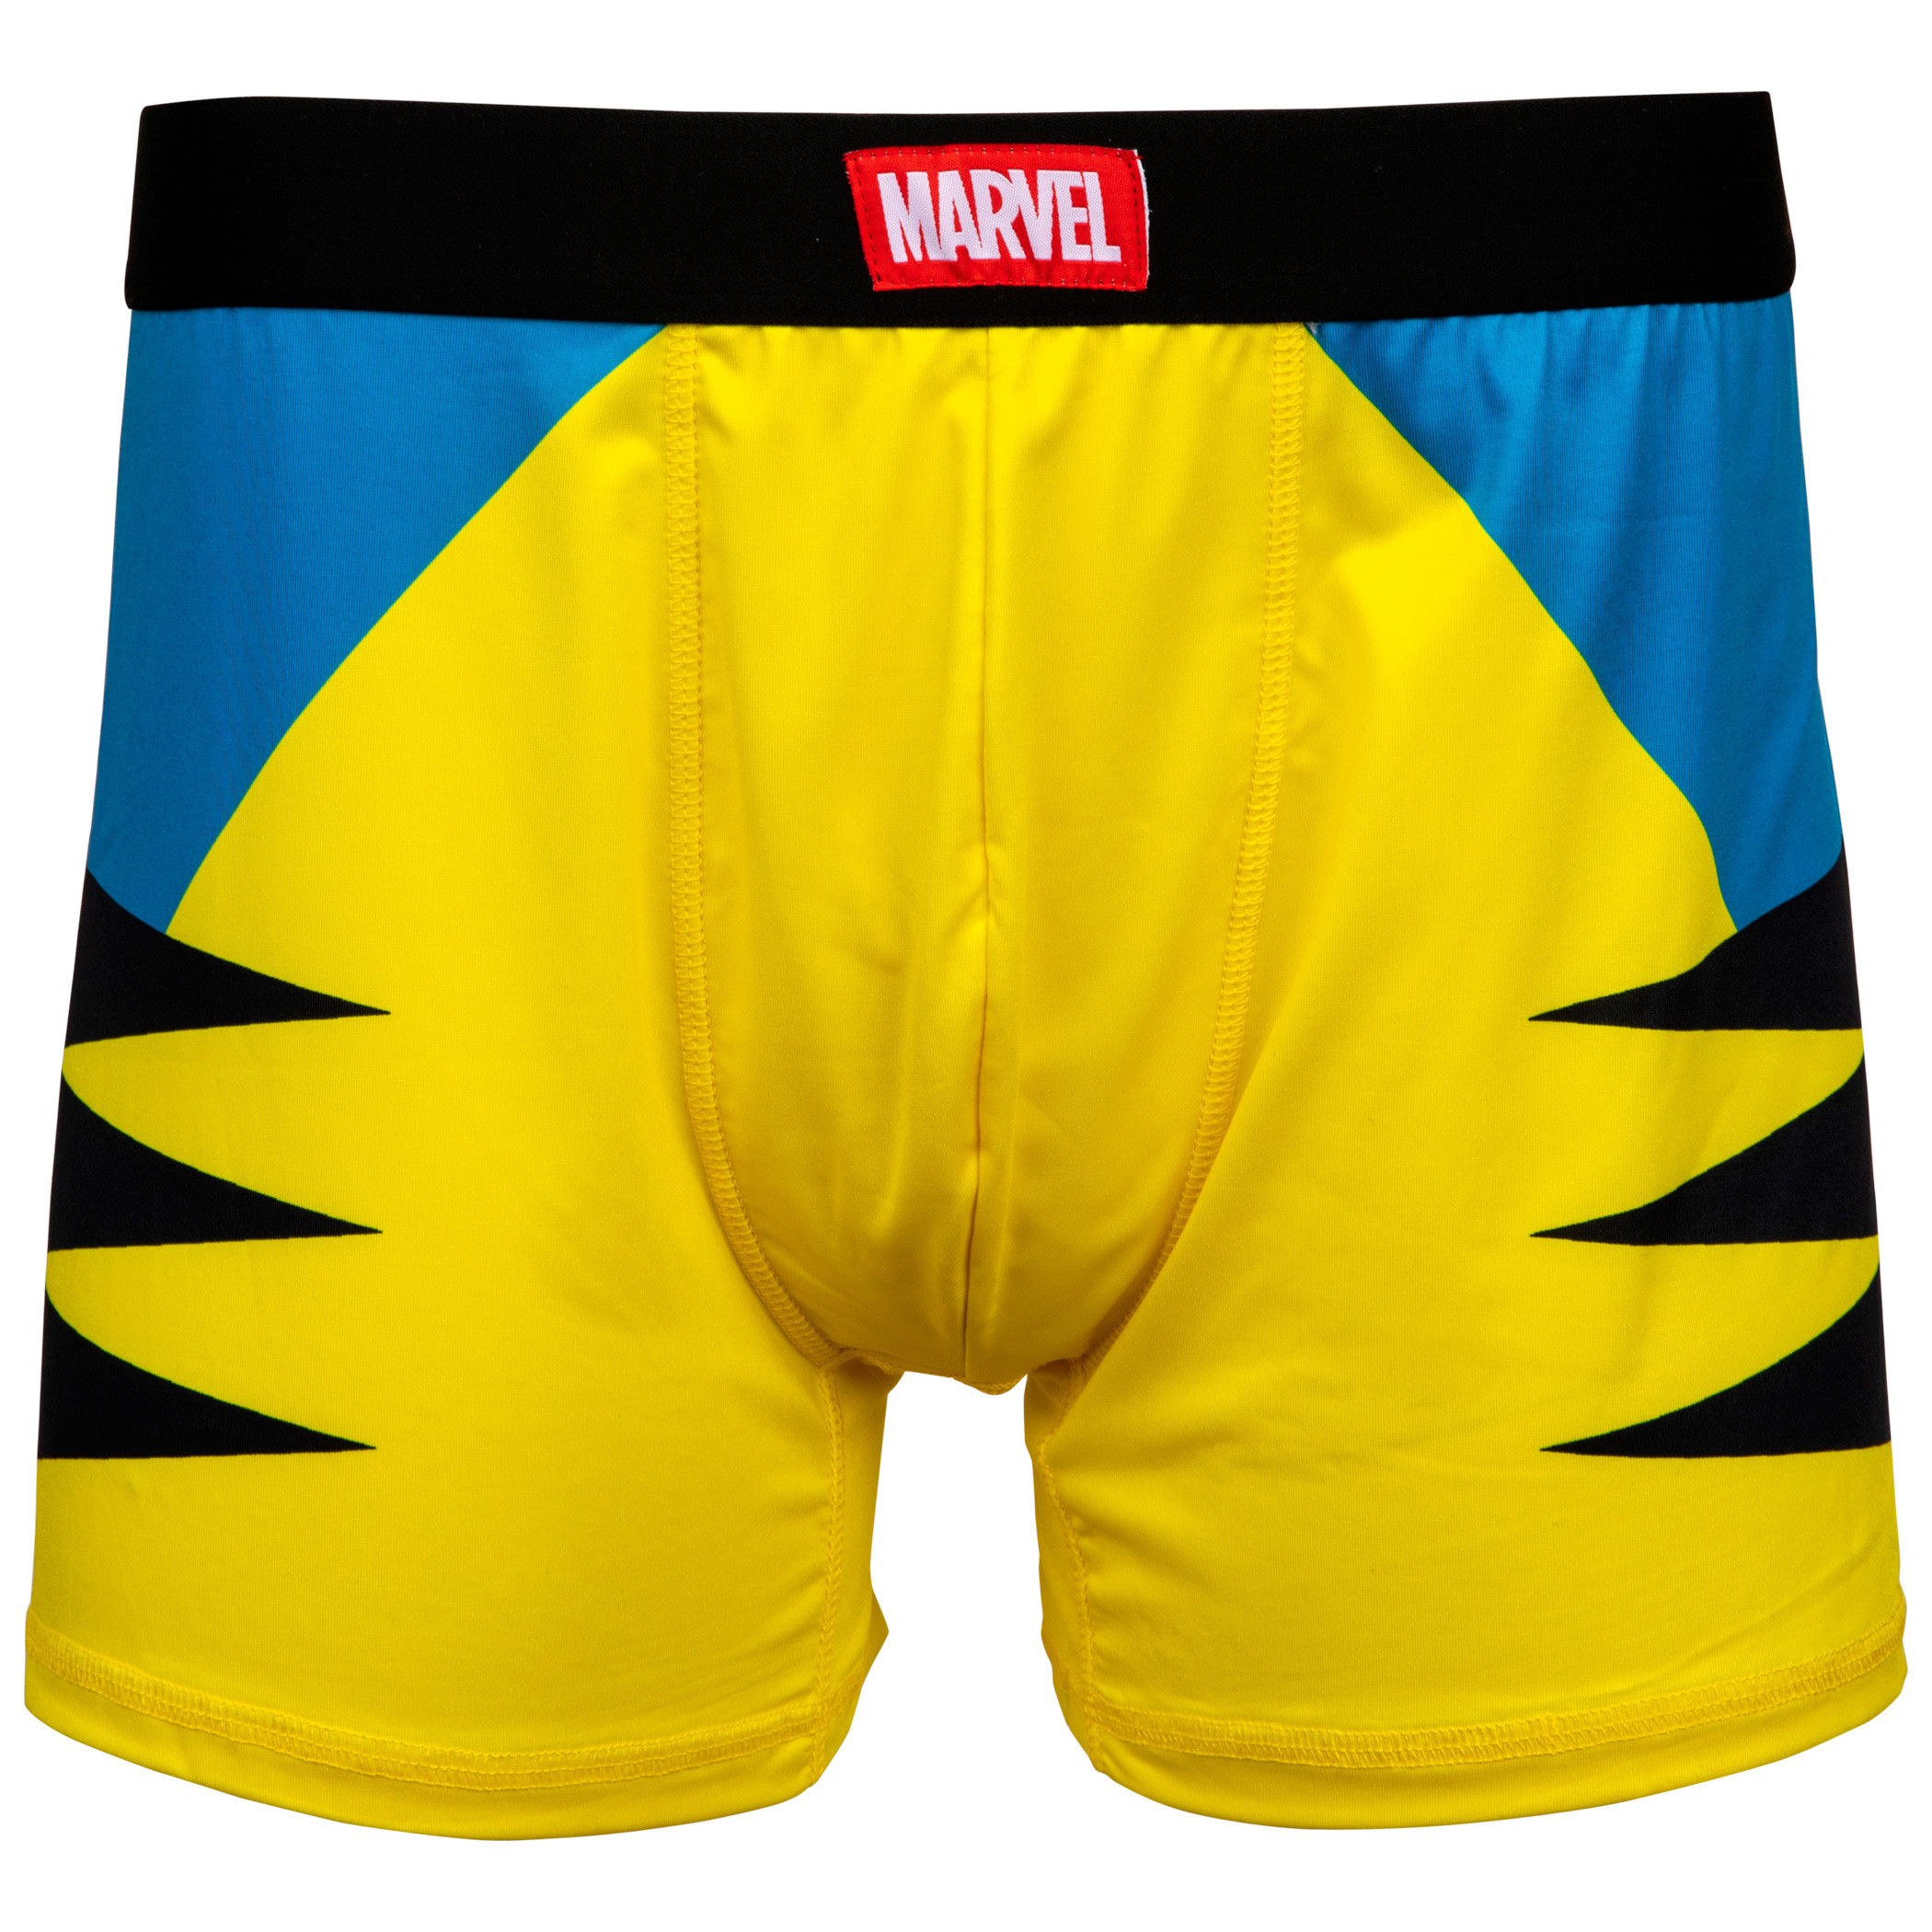 Wolverine Costume Men's Underwear Boxer Briefs